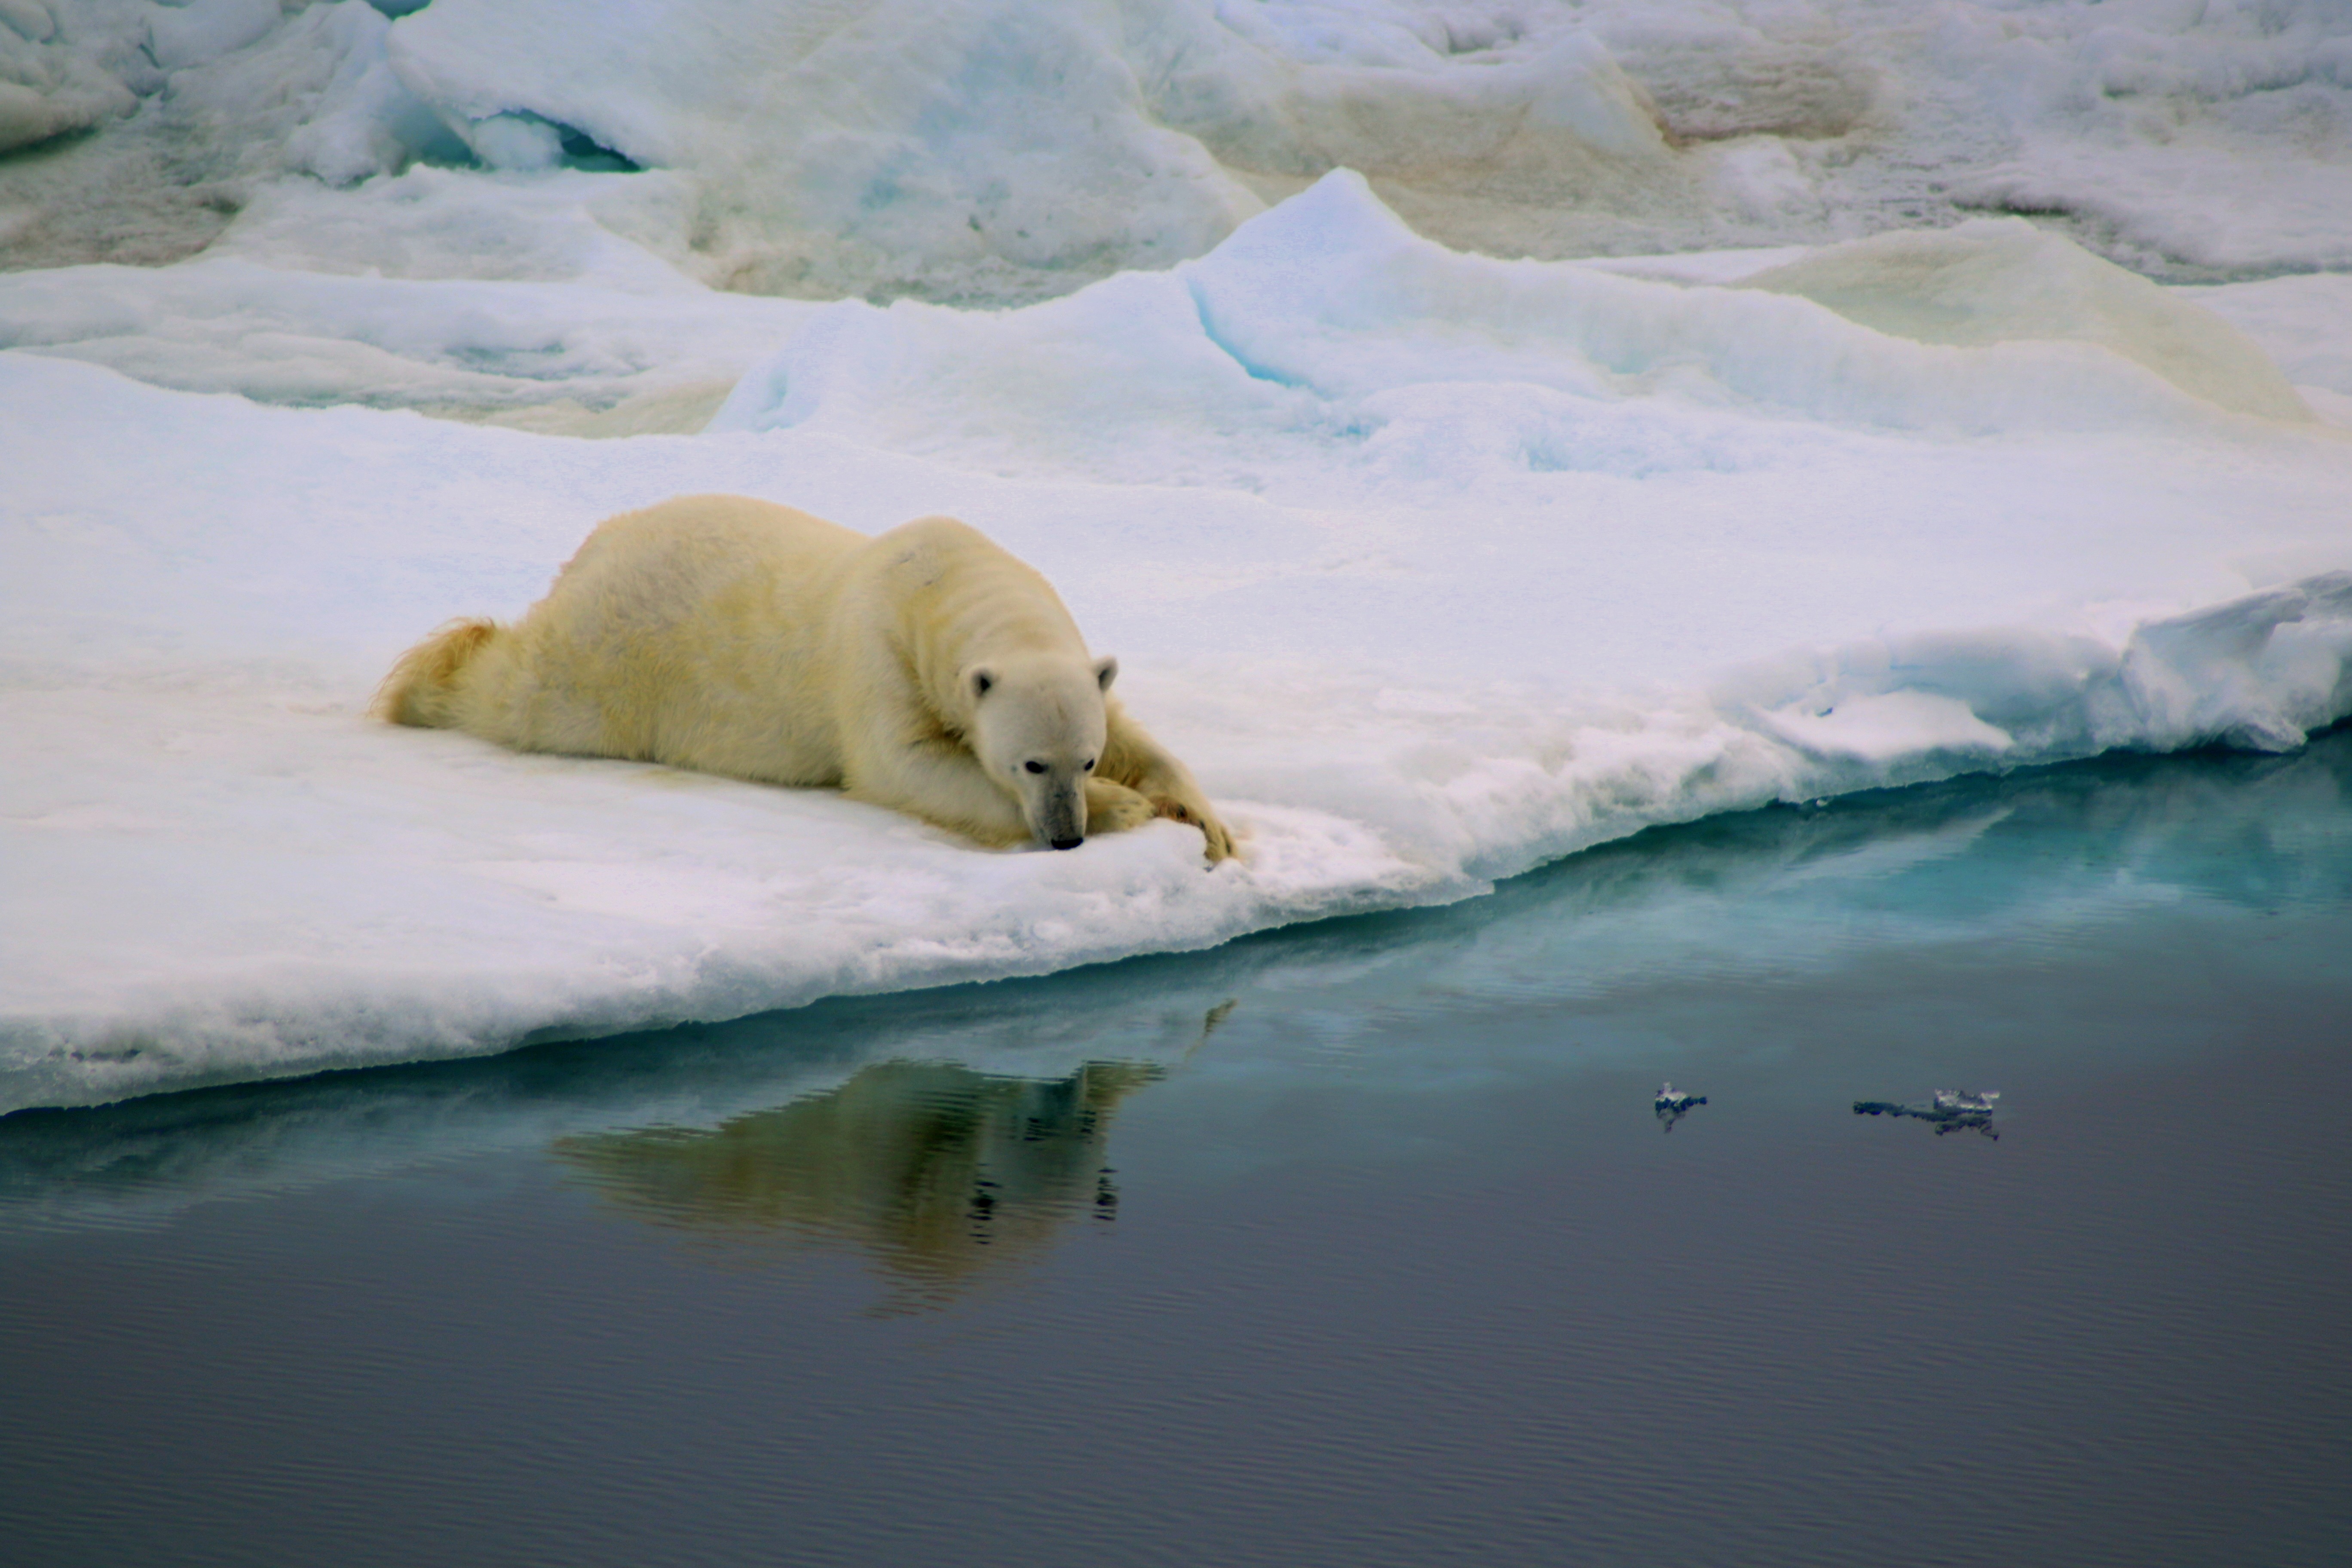 Feita por Antonia Doncila, a fotografia de um urso polar venceu na categoria 